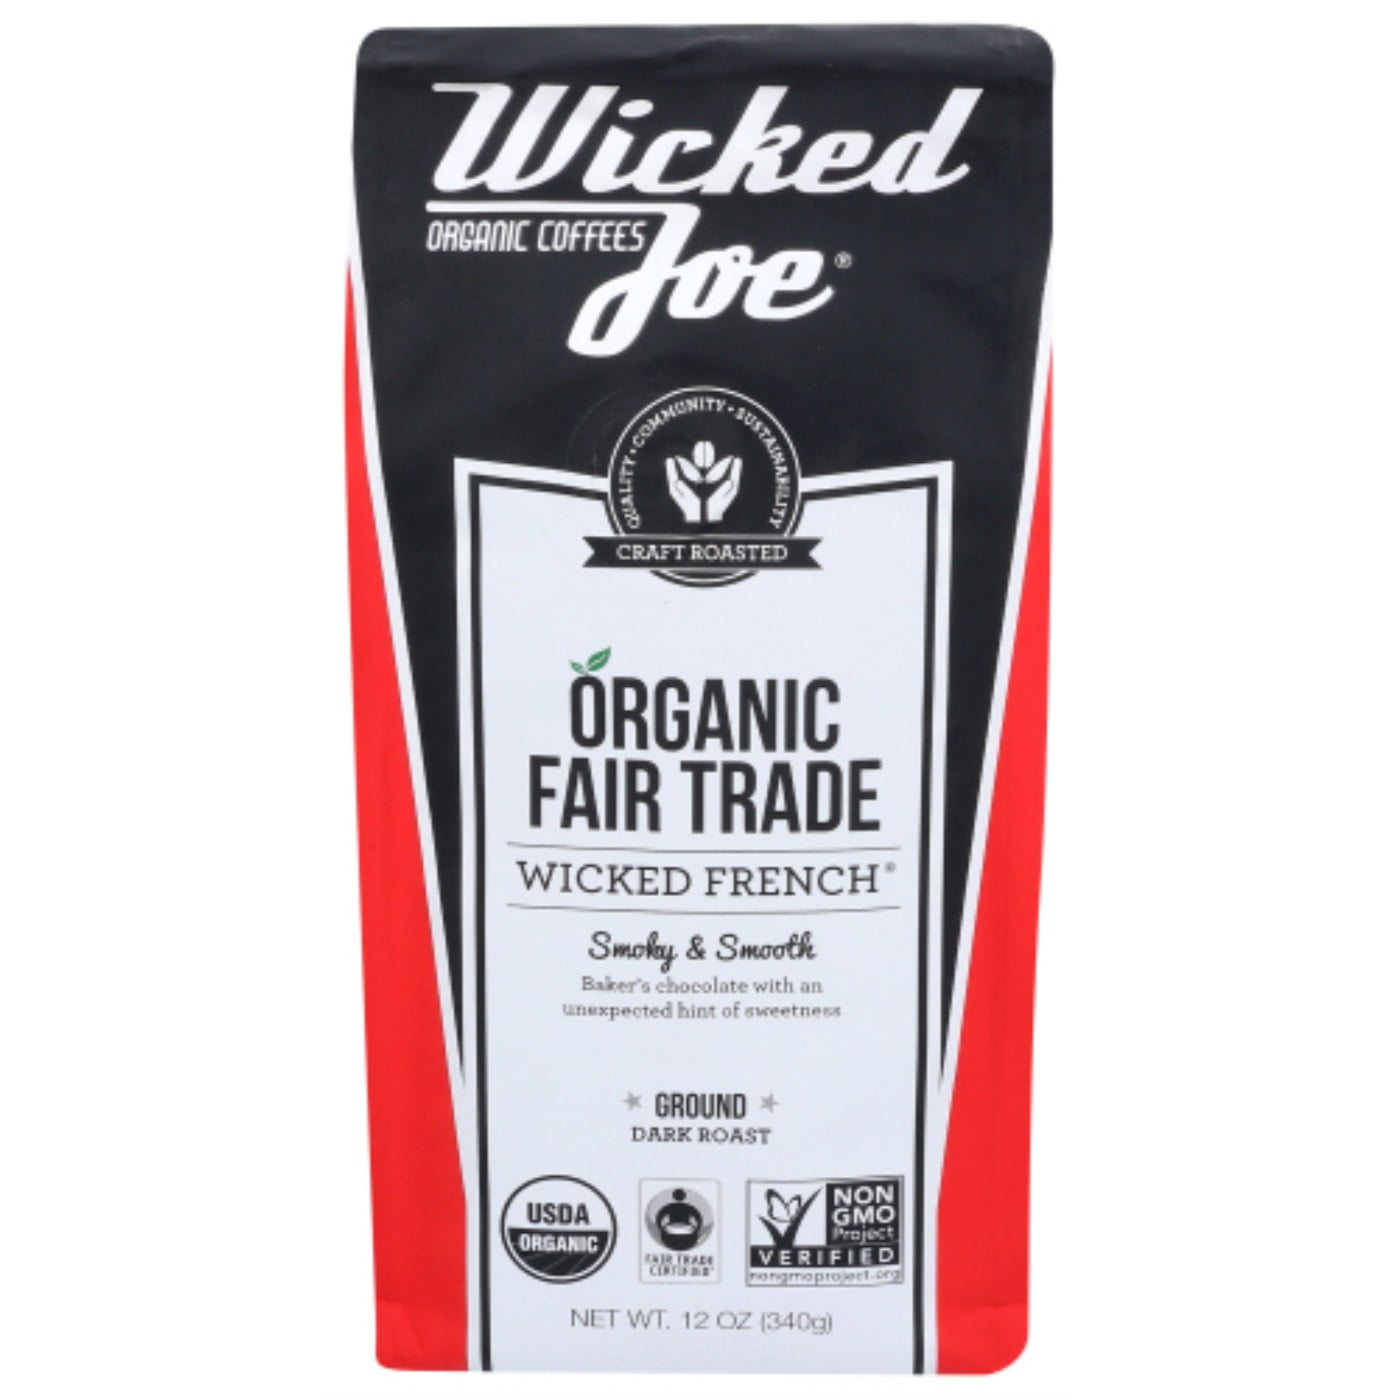 Wicked Joe Organic French Ground Coffee 10 Oz